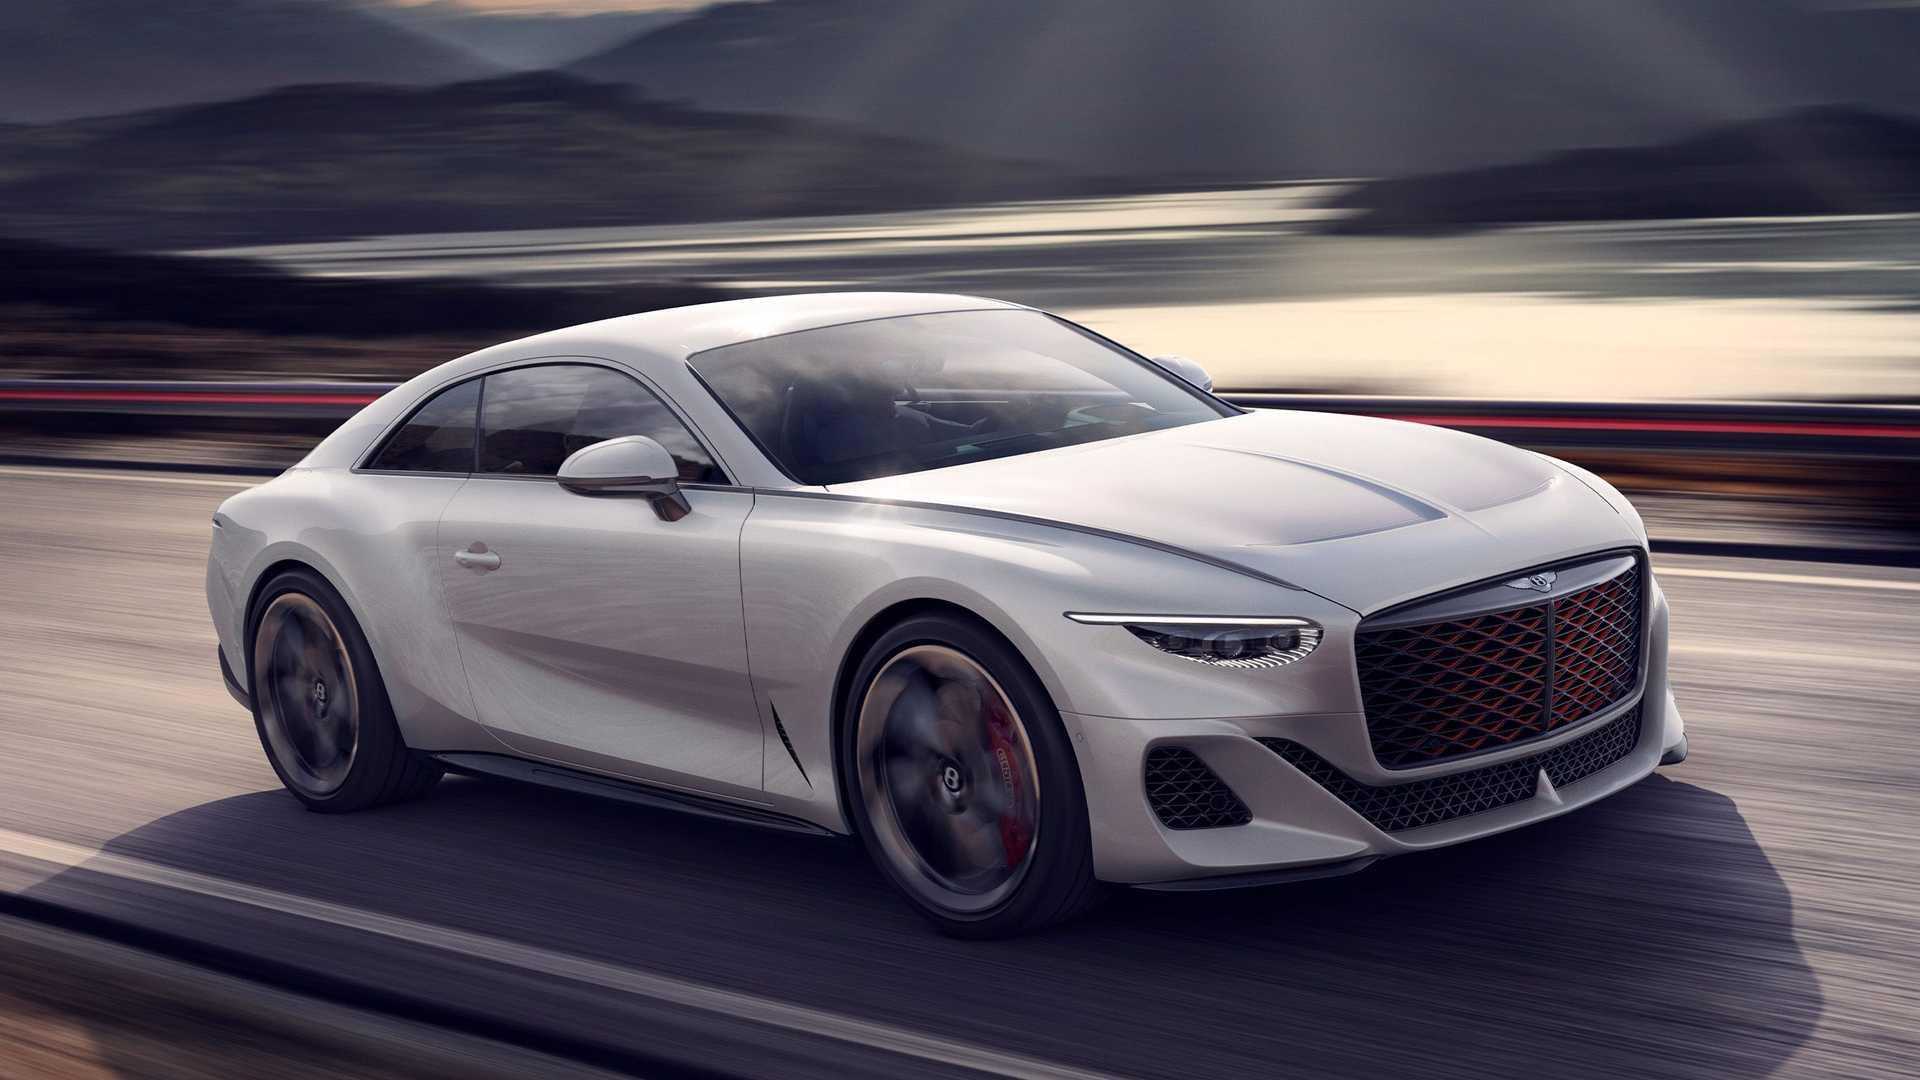 Самый быстрый автомобиль в мире на 2022 год: рейтинг топ-10 моделей суперкаров